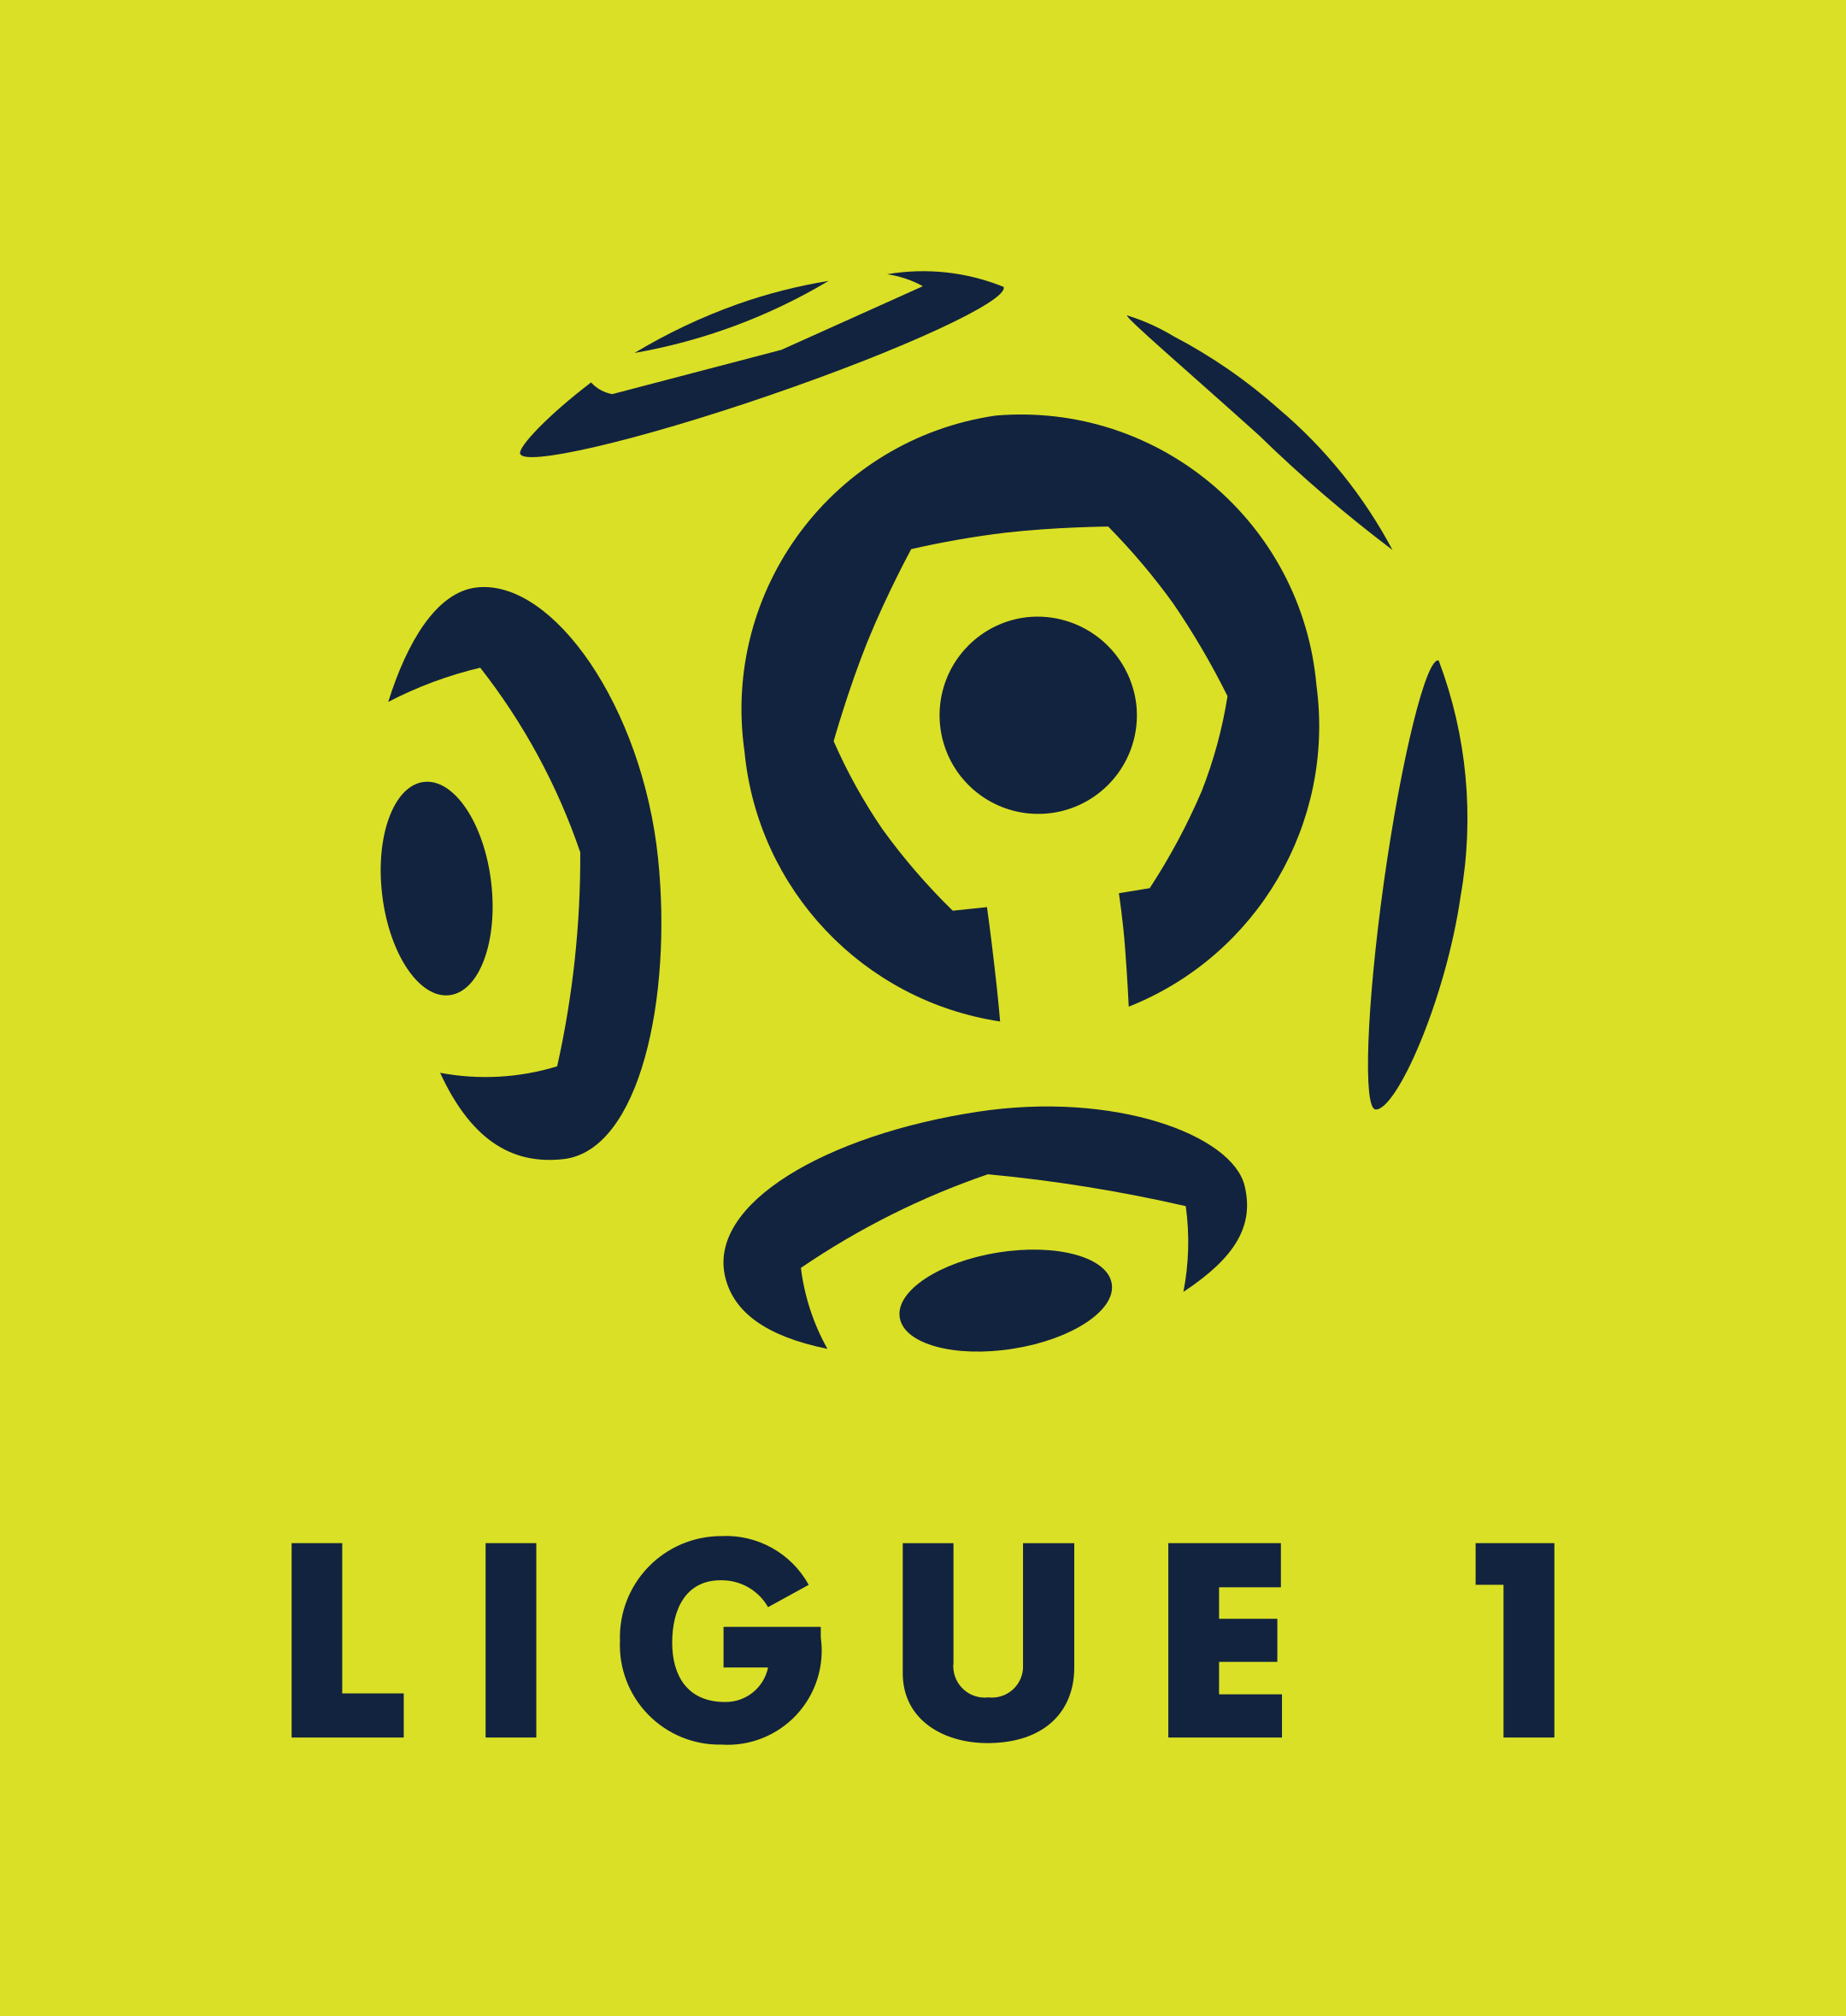 ligue 1 logo 2 - Ligue 1 Logo